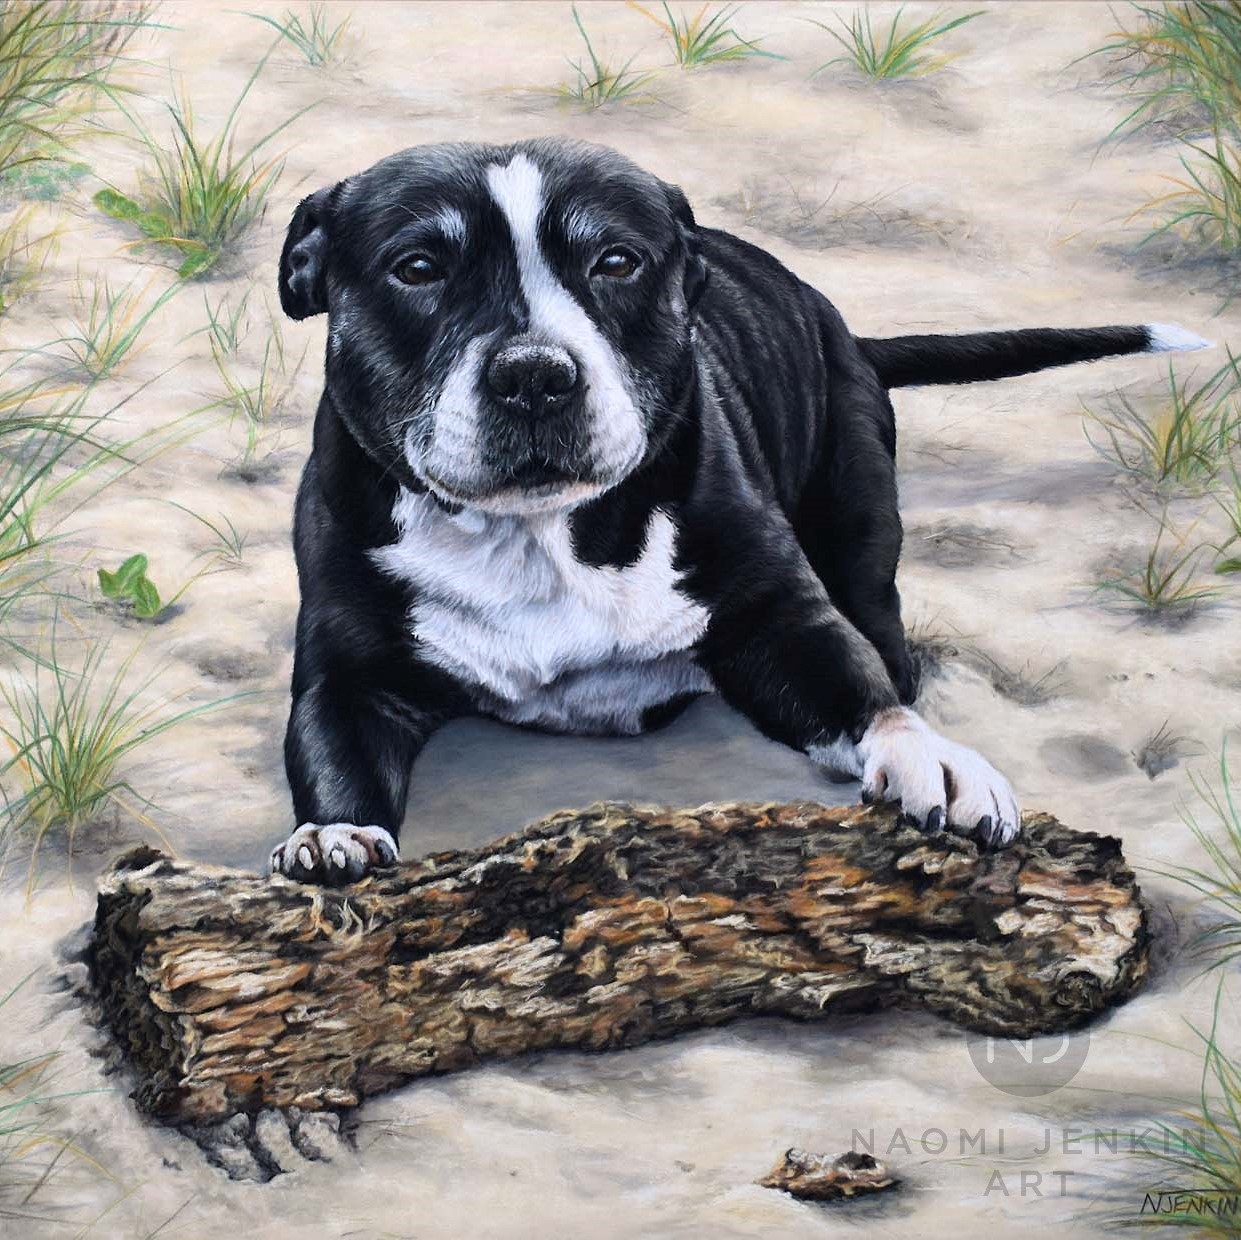 Pet portrait of Staffordshire Bull Terrier by Naomi Jenkin Art. 